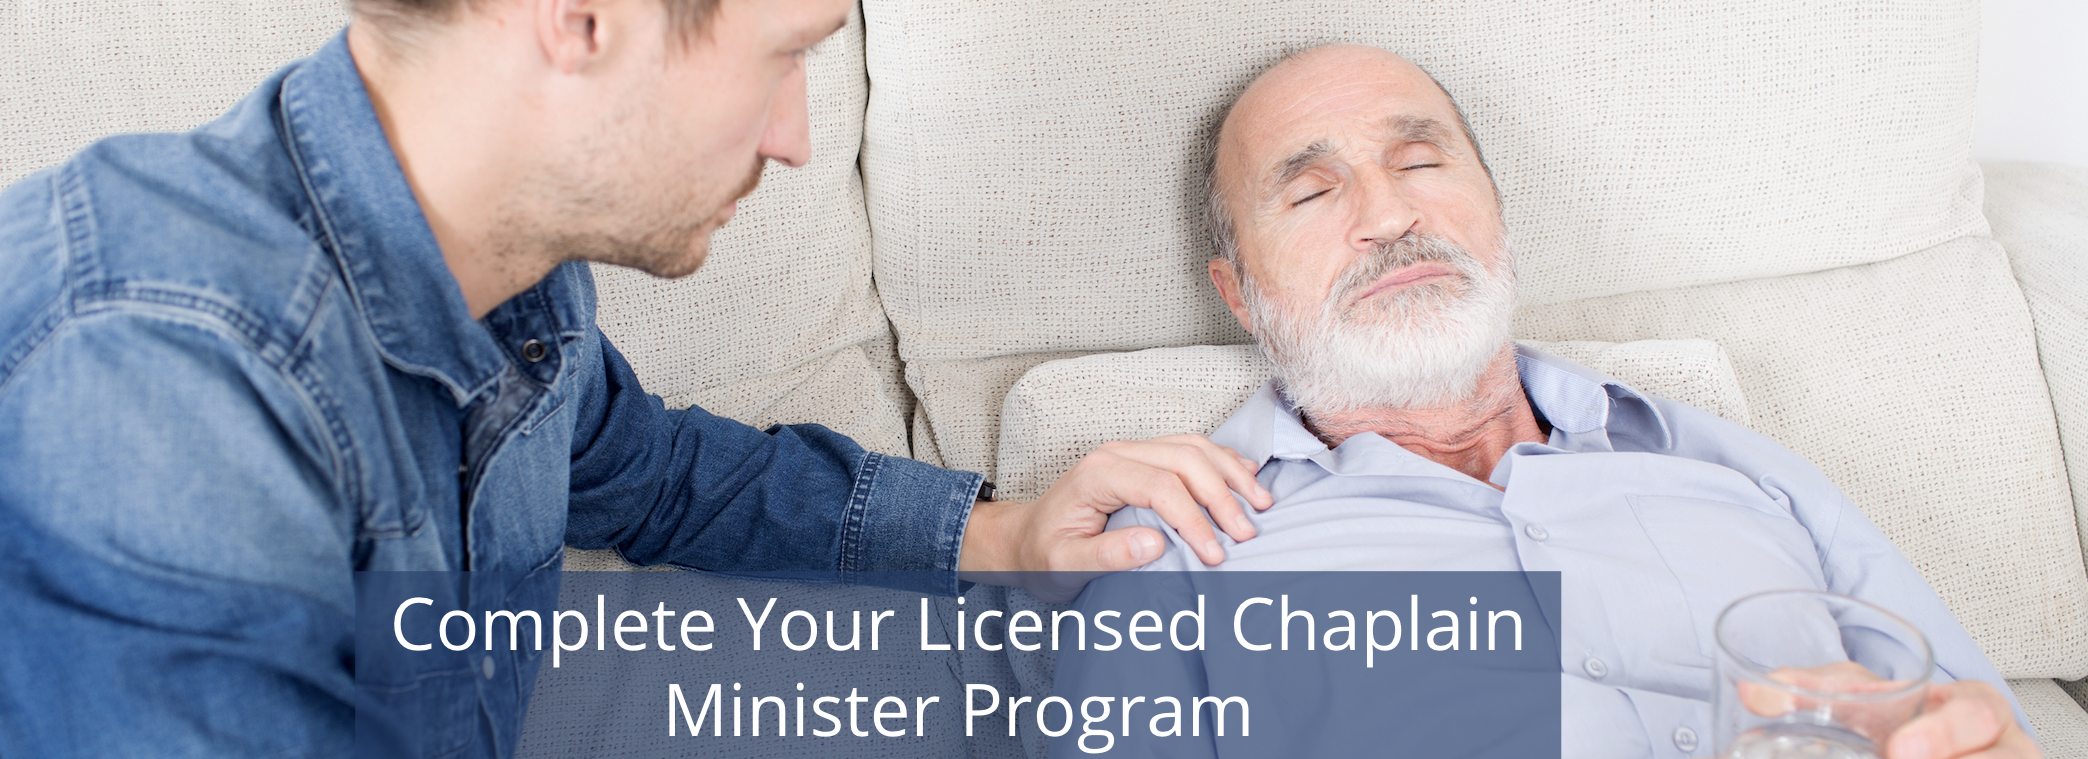 Licensed Chaplain Minister Program